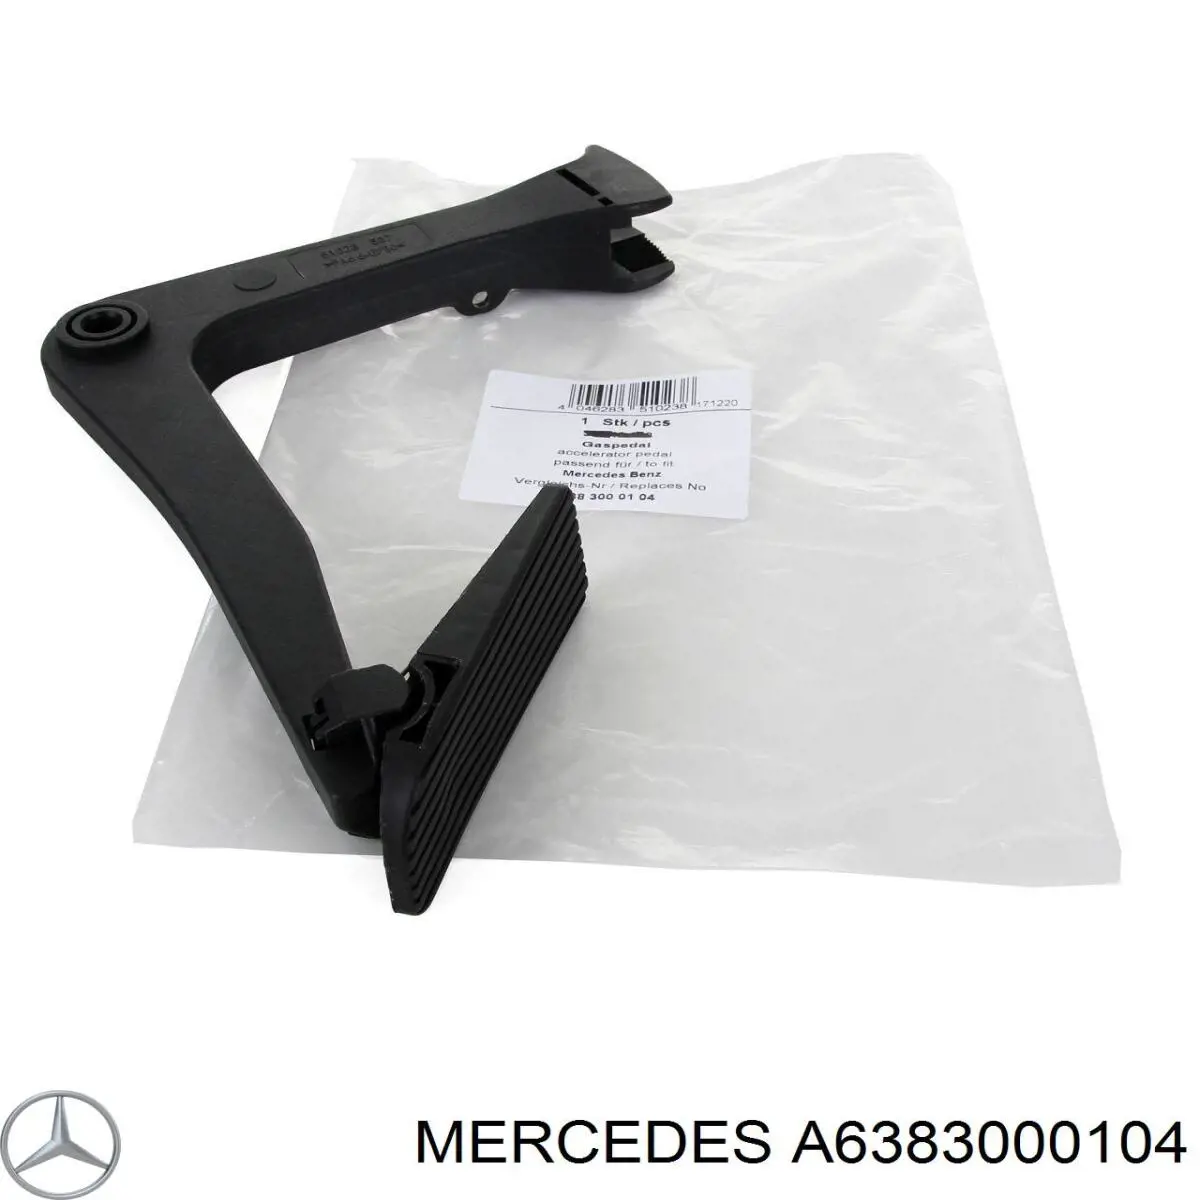 A6383000104 Mercedes педаль газа (акселератора)